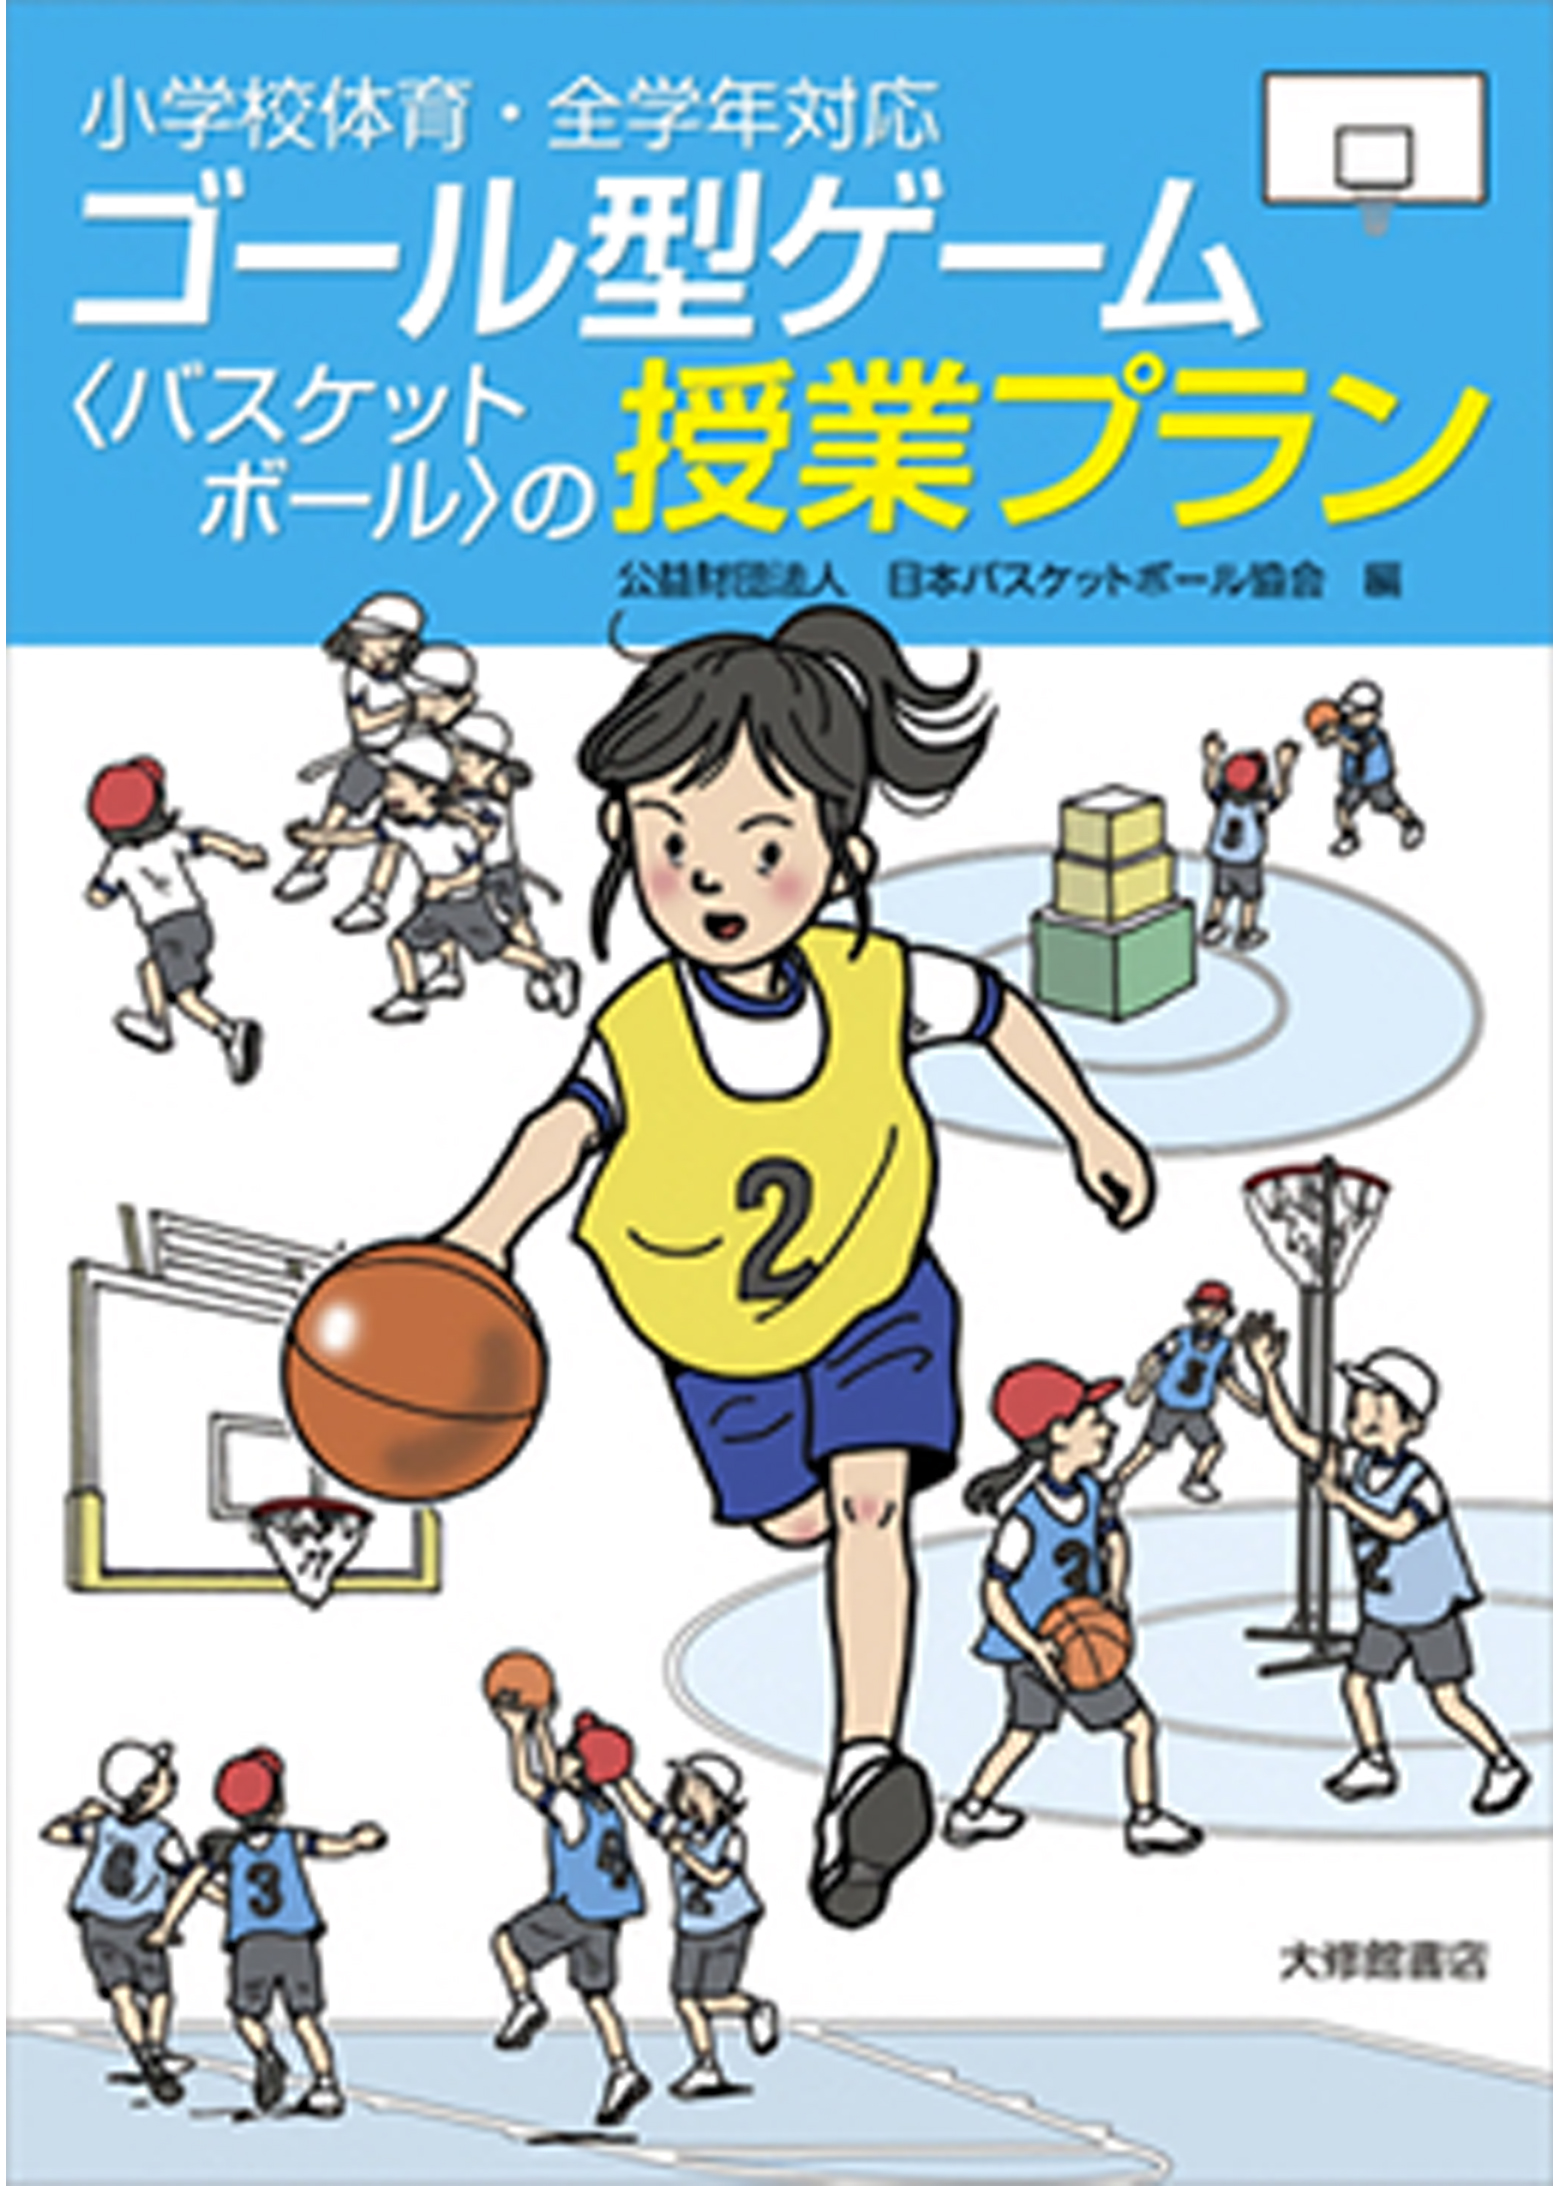 バスケットボール指導教本 JBA公式テキスト/DVD 他 | 公益財団法人日本 